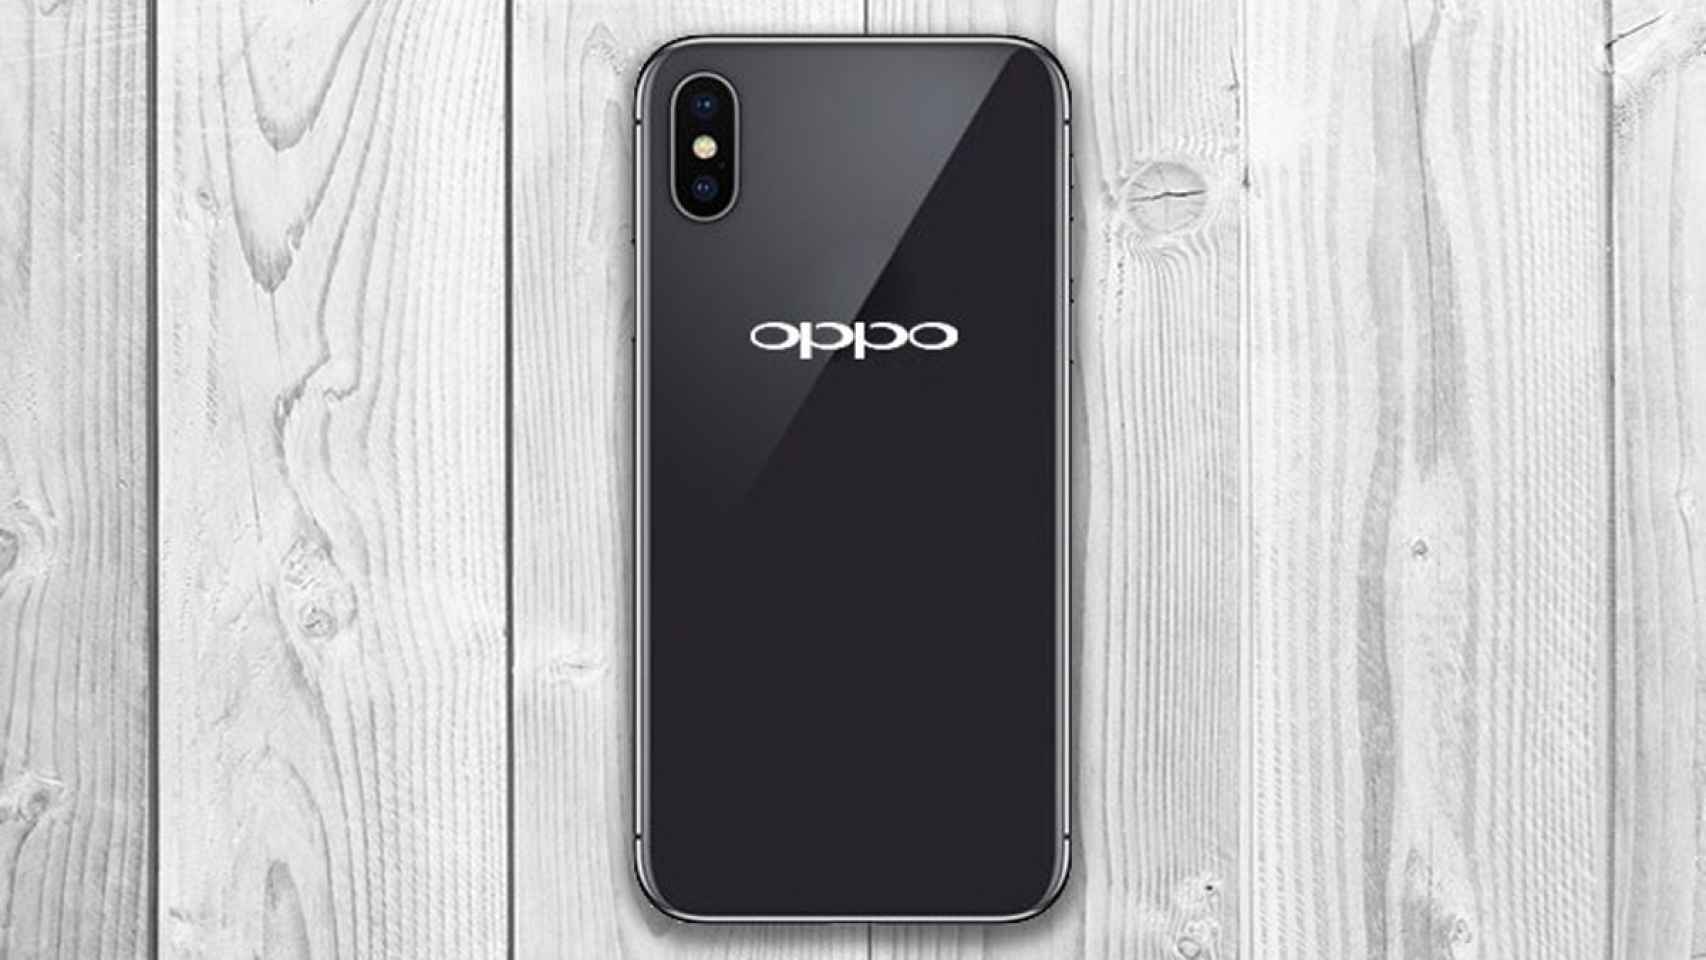 El OPPO R13 se filtra en vídeo y muestra su brutal parecido al iPhone X